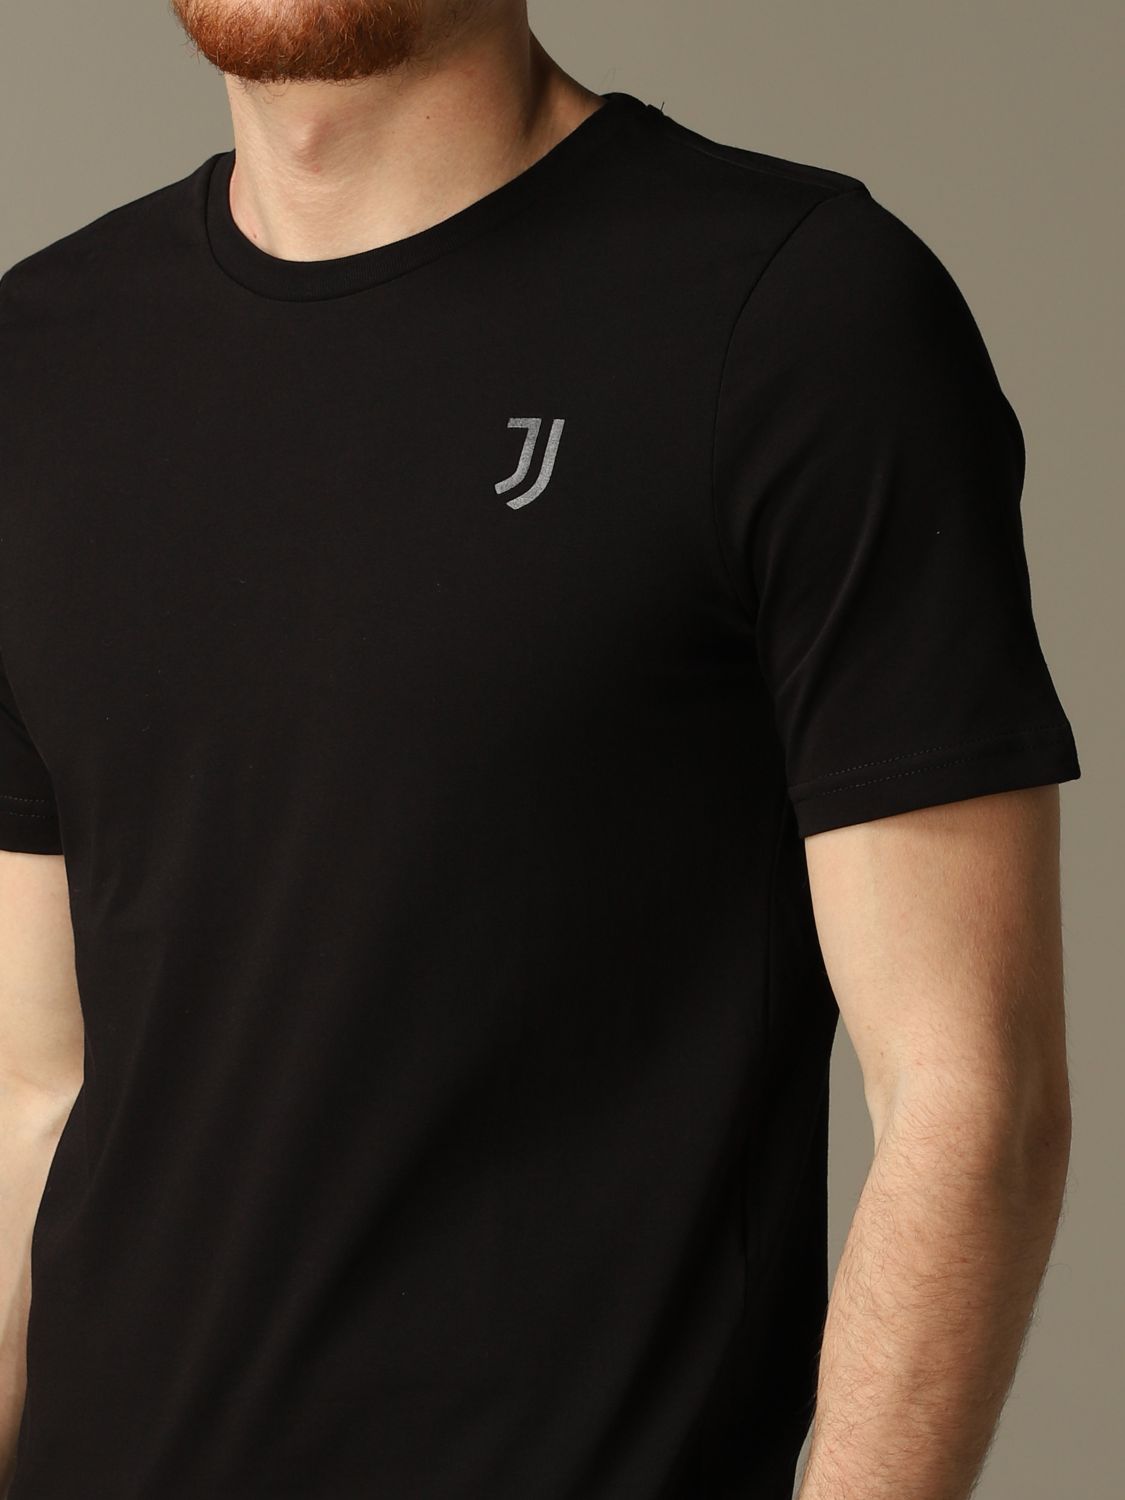 T-Shirt Juventus Premium: T-shirt herren Juventus Premium schwarz 3